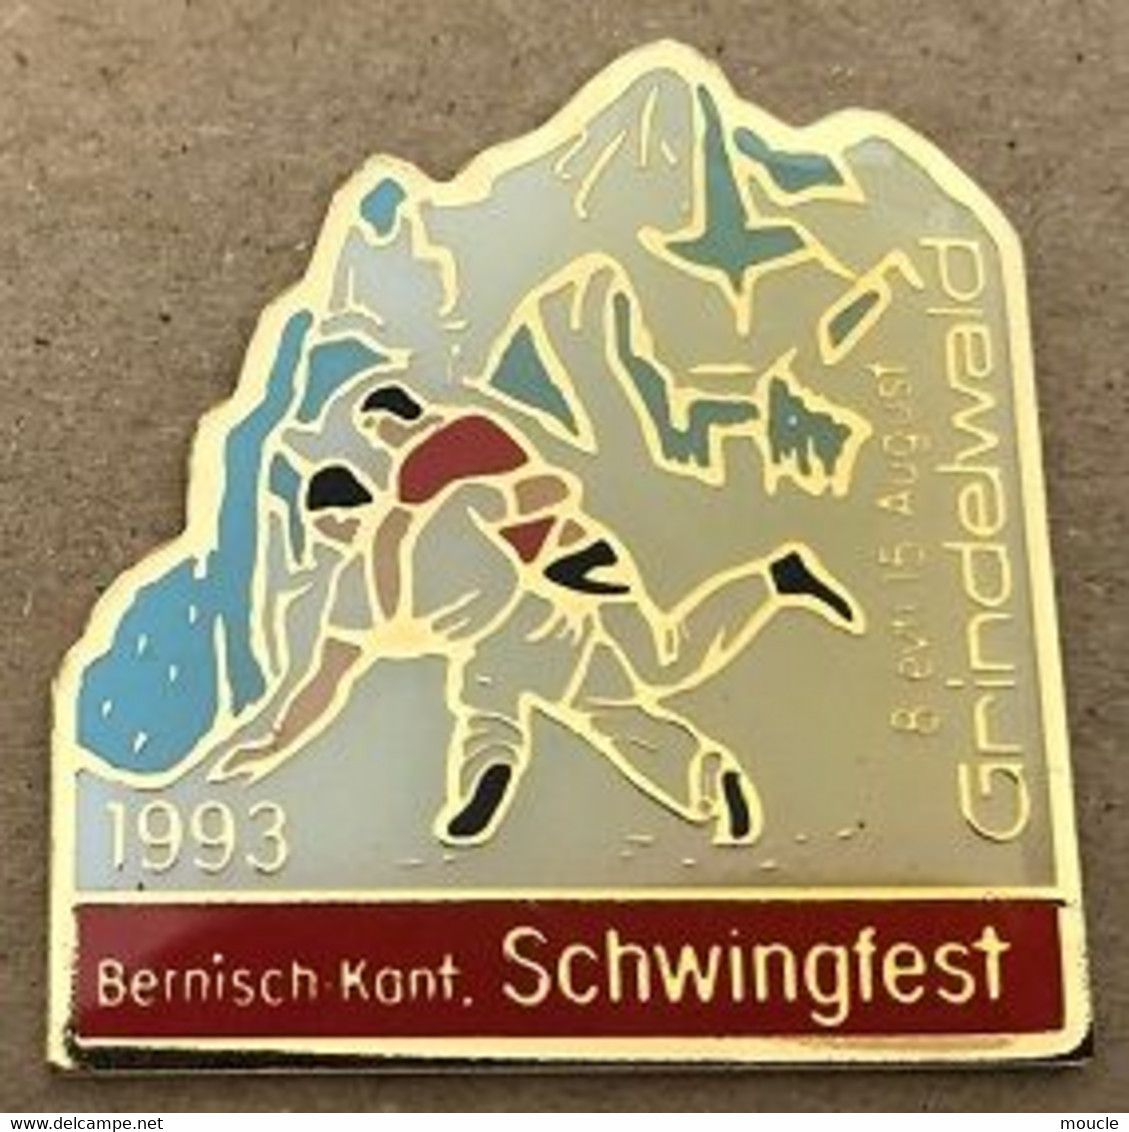 LUTTE SUISSE -  BERNISCH KANT. SCHWINGFEST - 8 / 15 AUGUST - AOÛT 1993 - GRINDELWALD - SCHWEIZ - SWITZERLAND -  (18) - Ringen